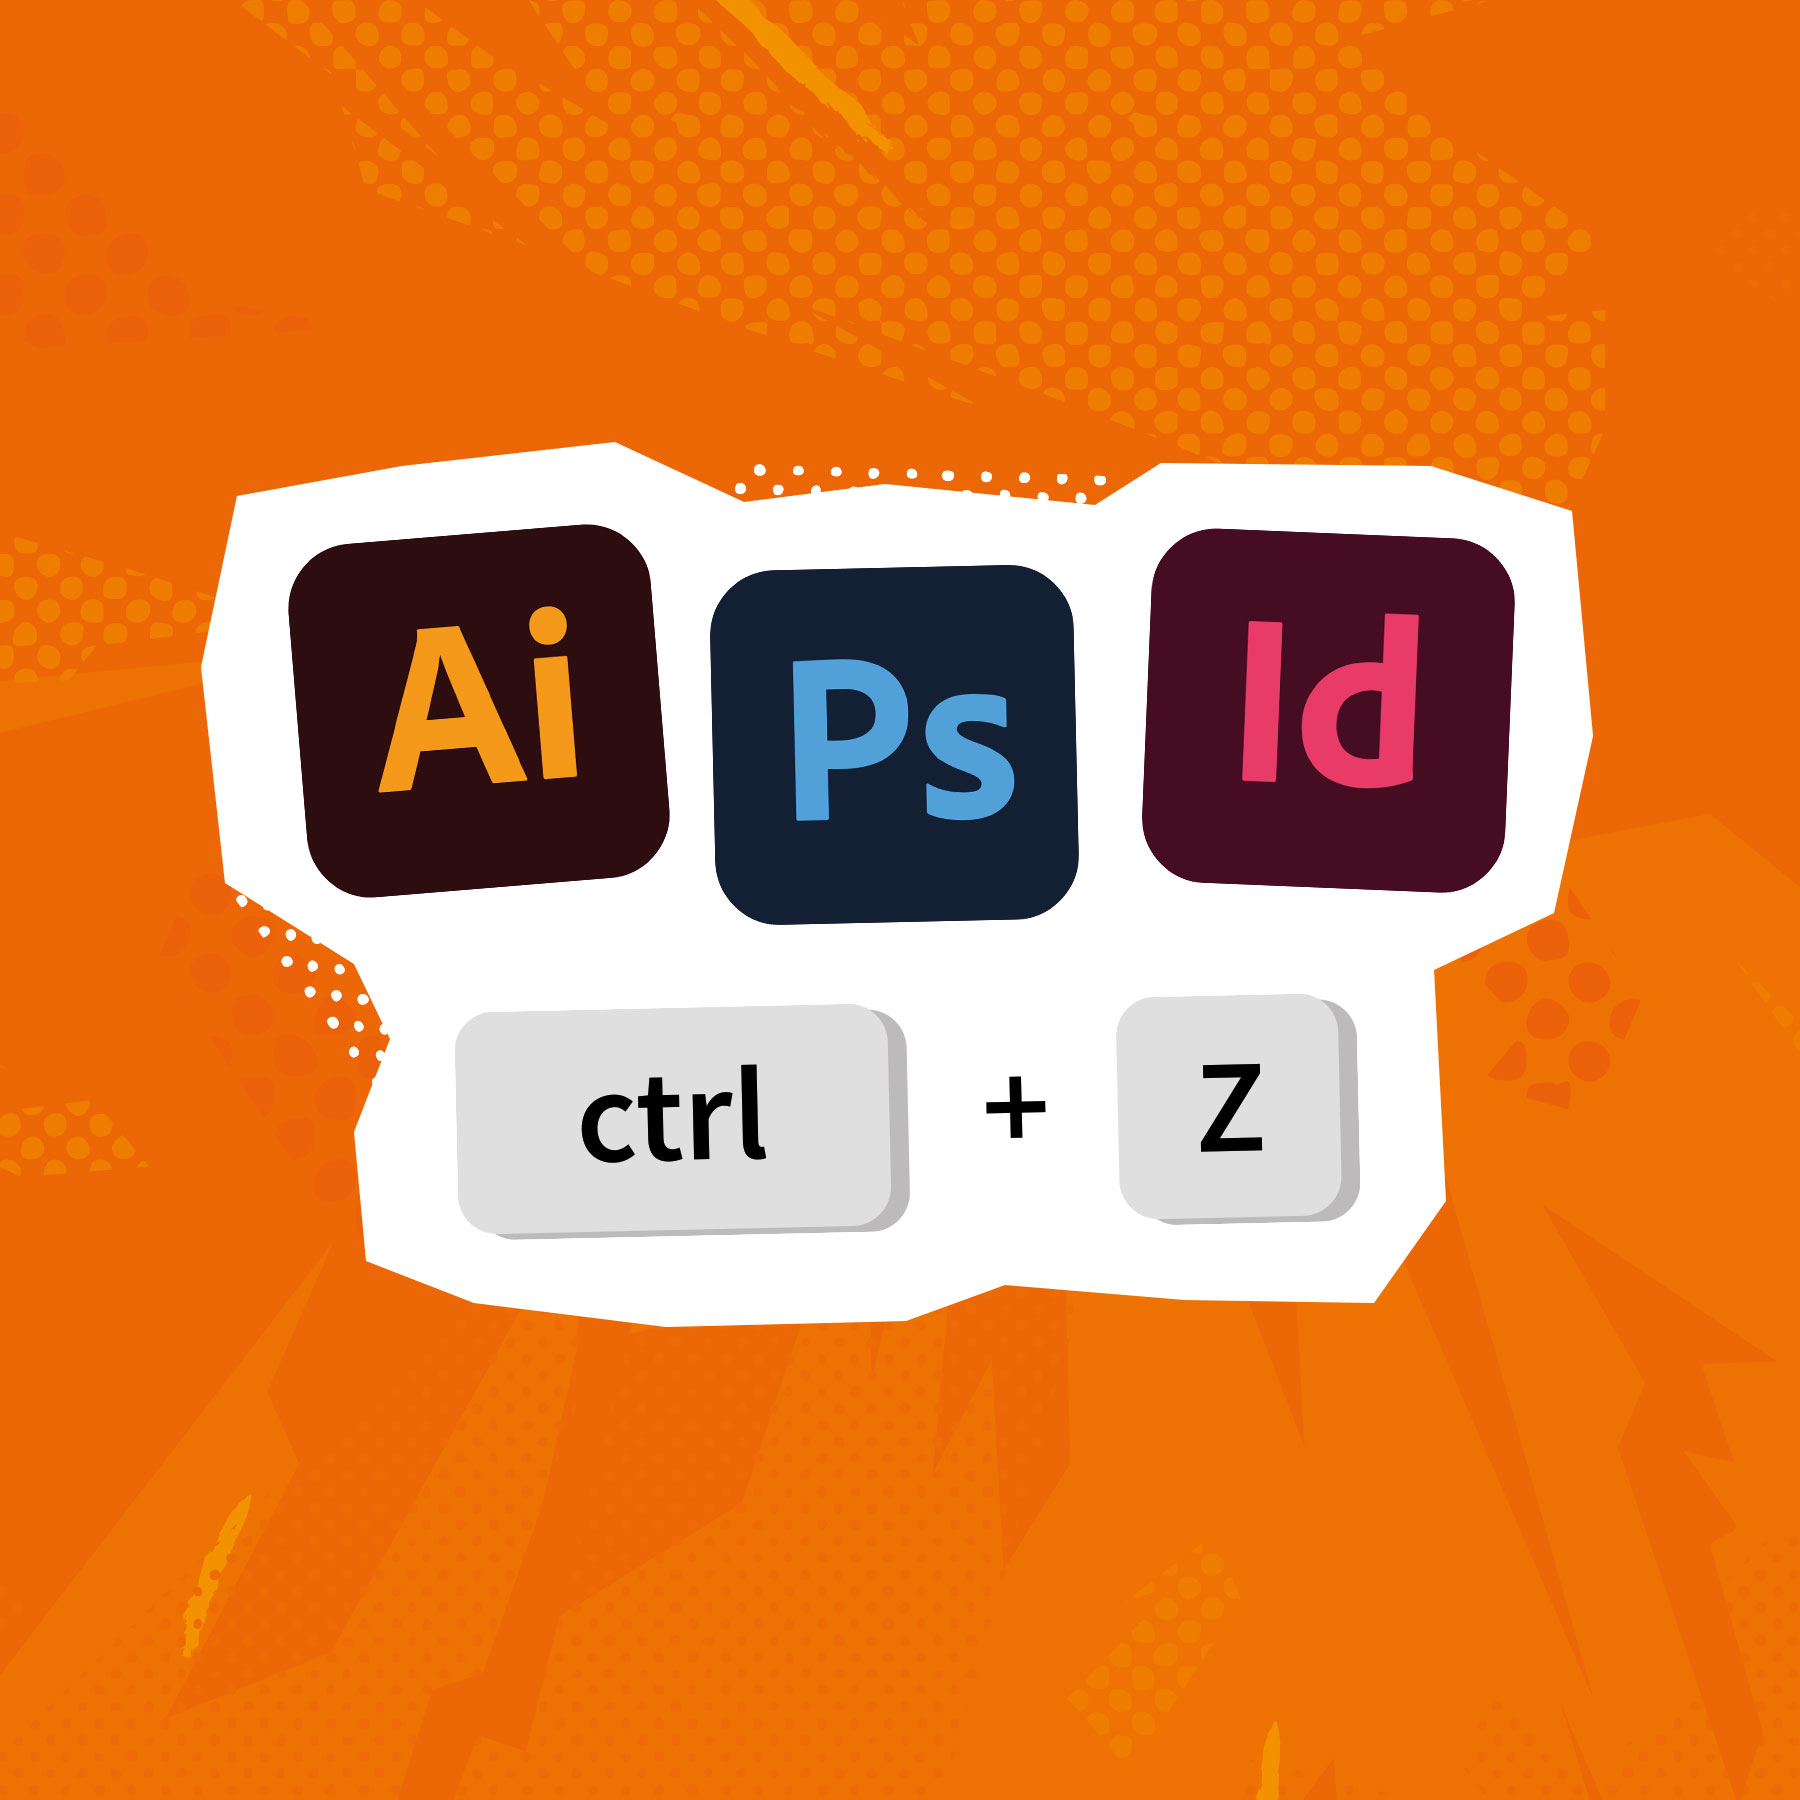 Gratis tools - Adobe shortcuts